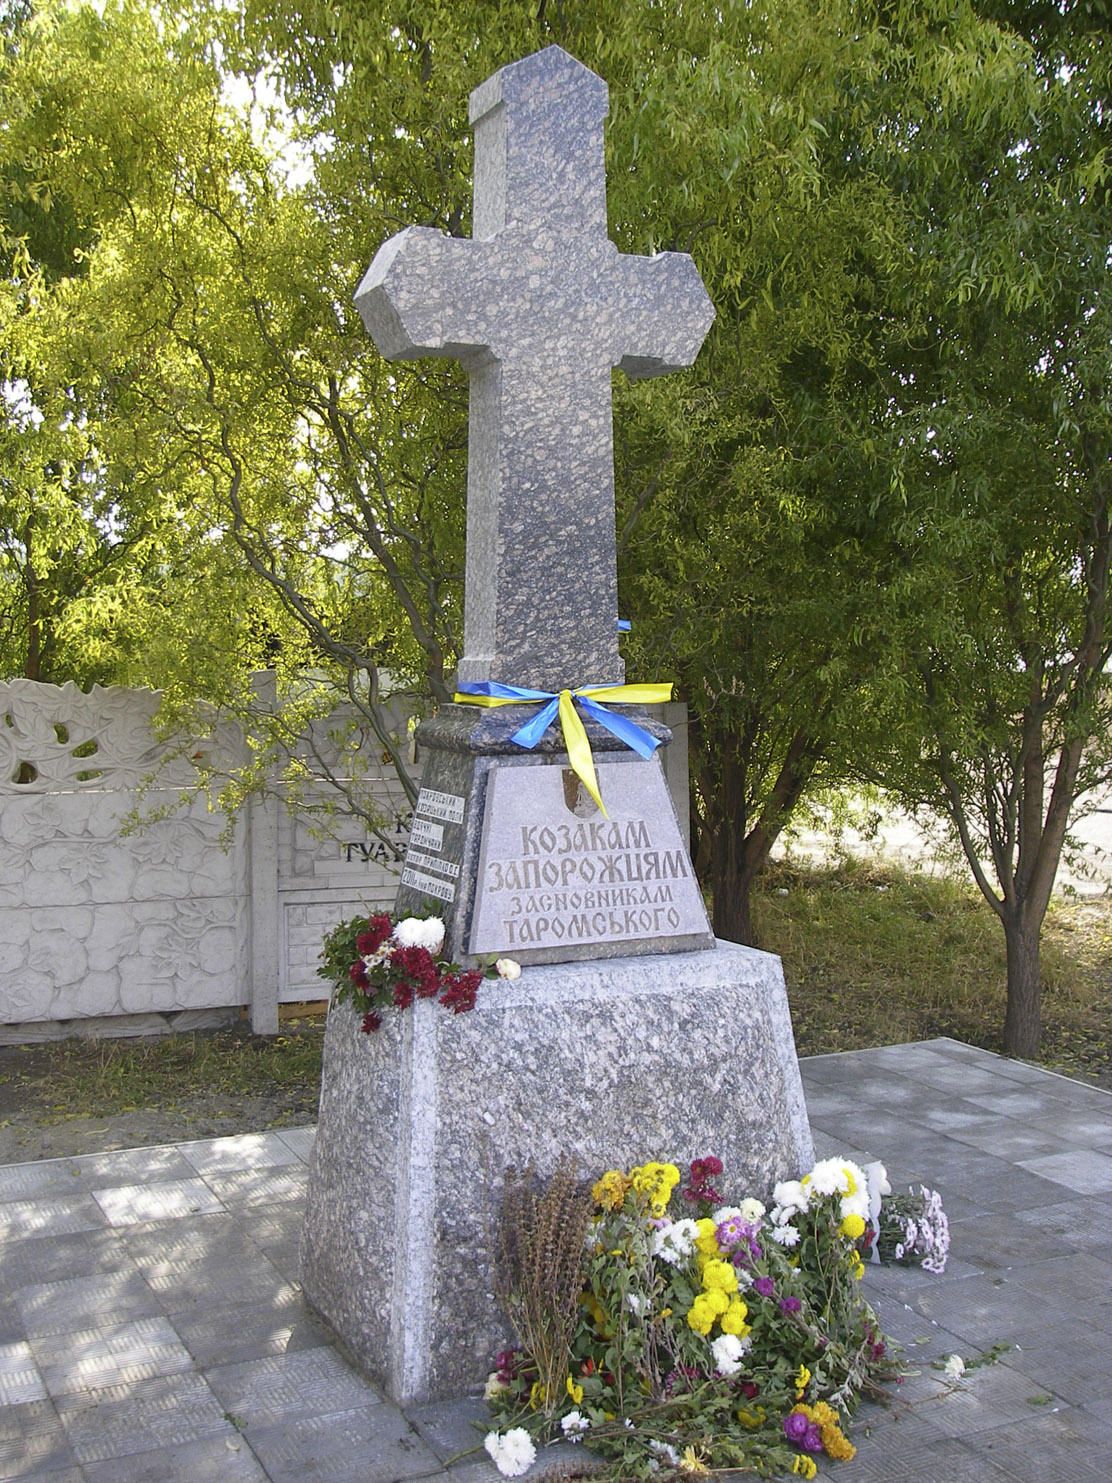 Пам’ятник козакам-запорожцям – засновникам Таромського, 2011 